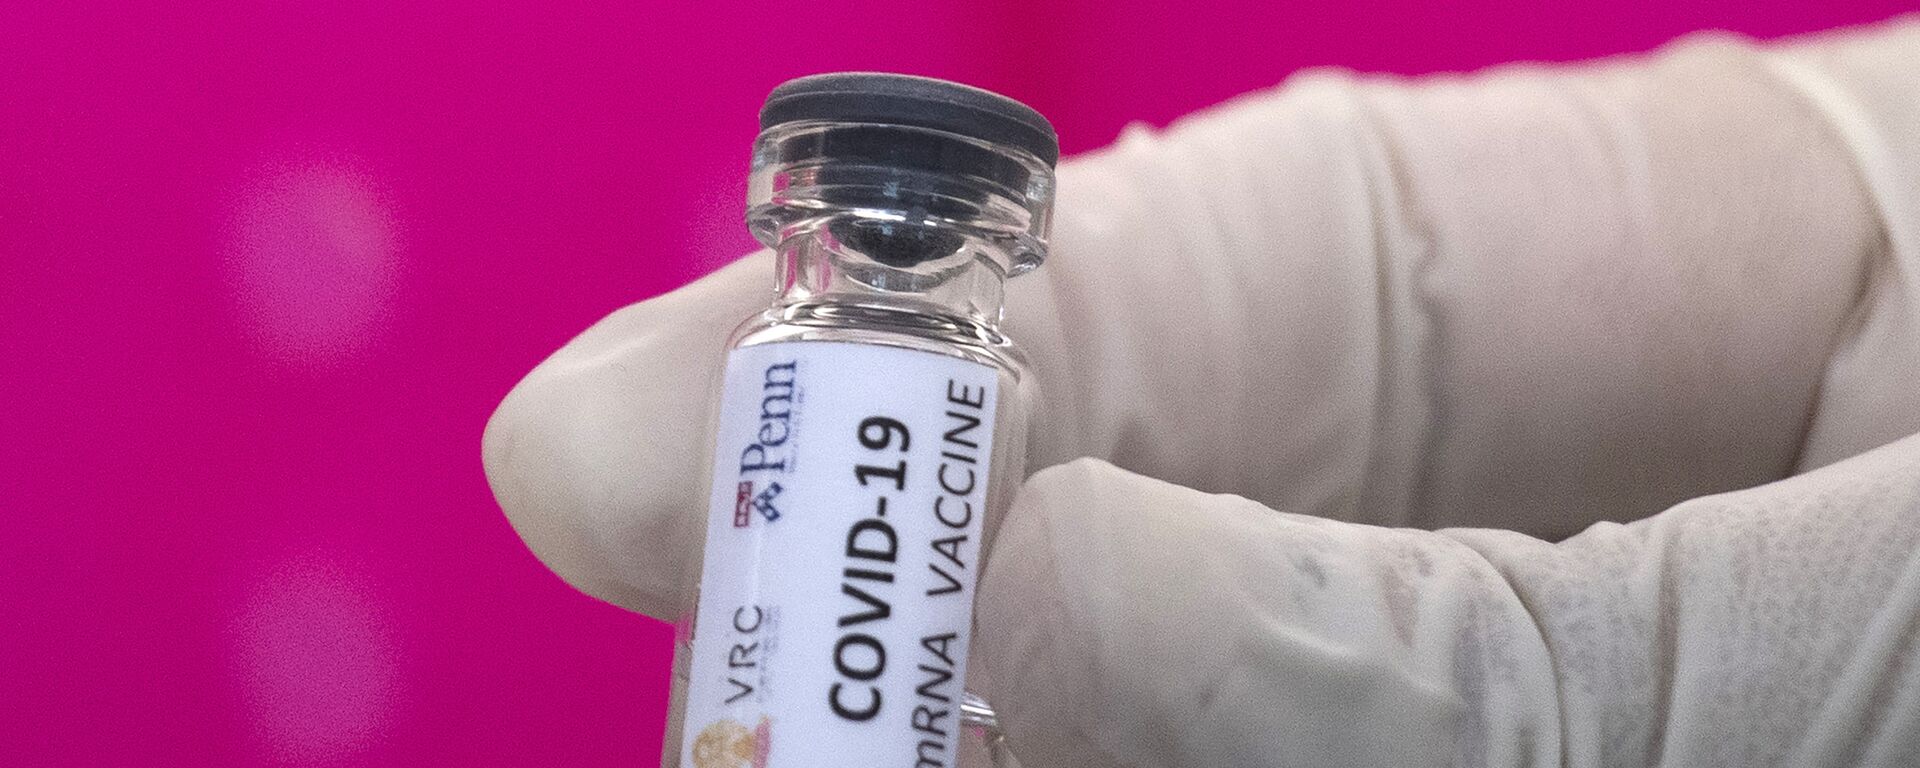 Вакцина от COVID-19 во время тестирования в исследовательском центре вакцин - Sputnik Արմենիա, 1920, 27.12.2021